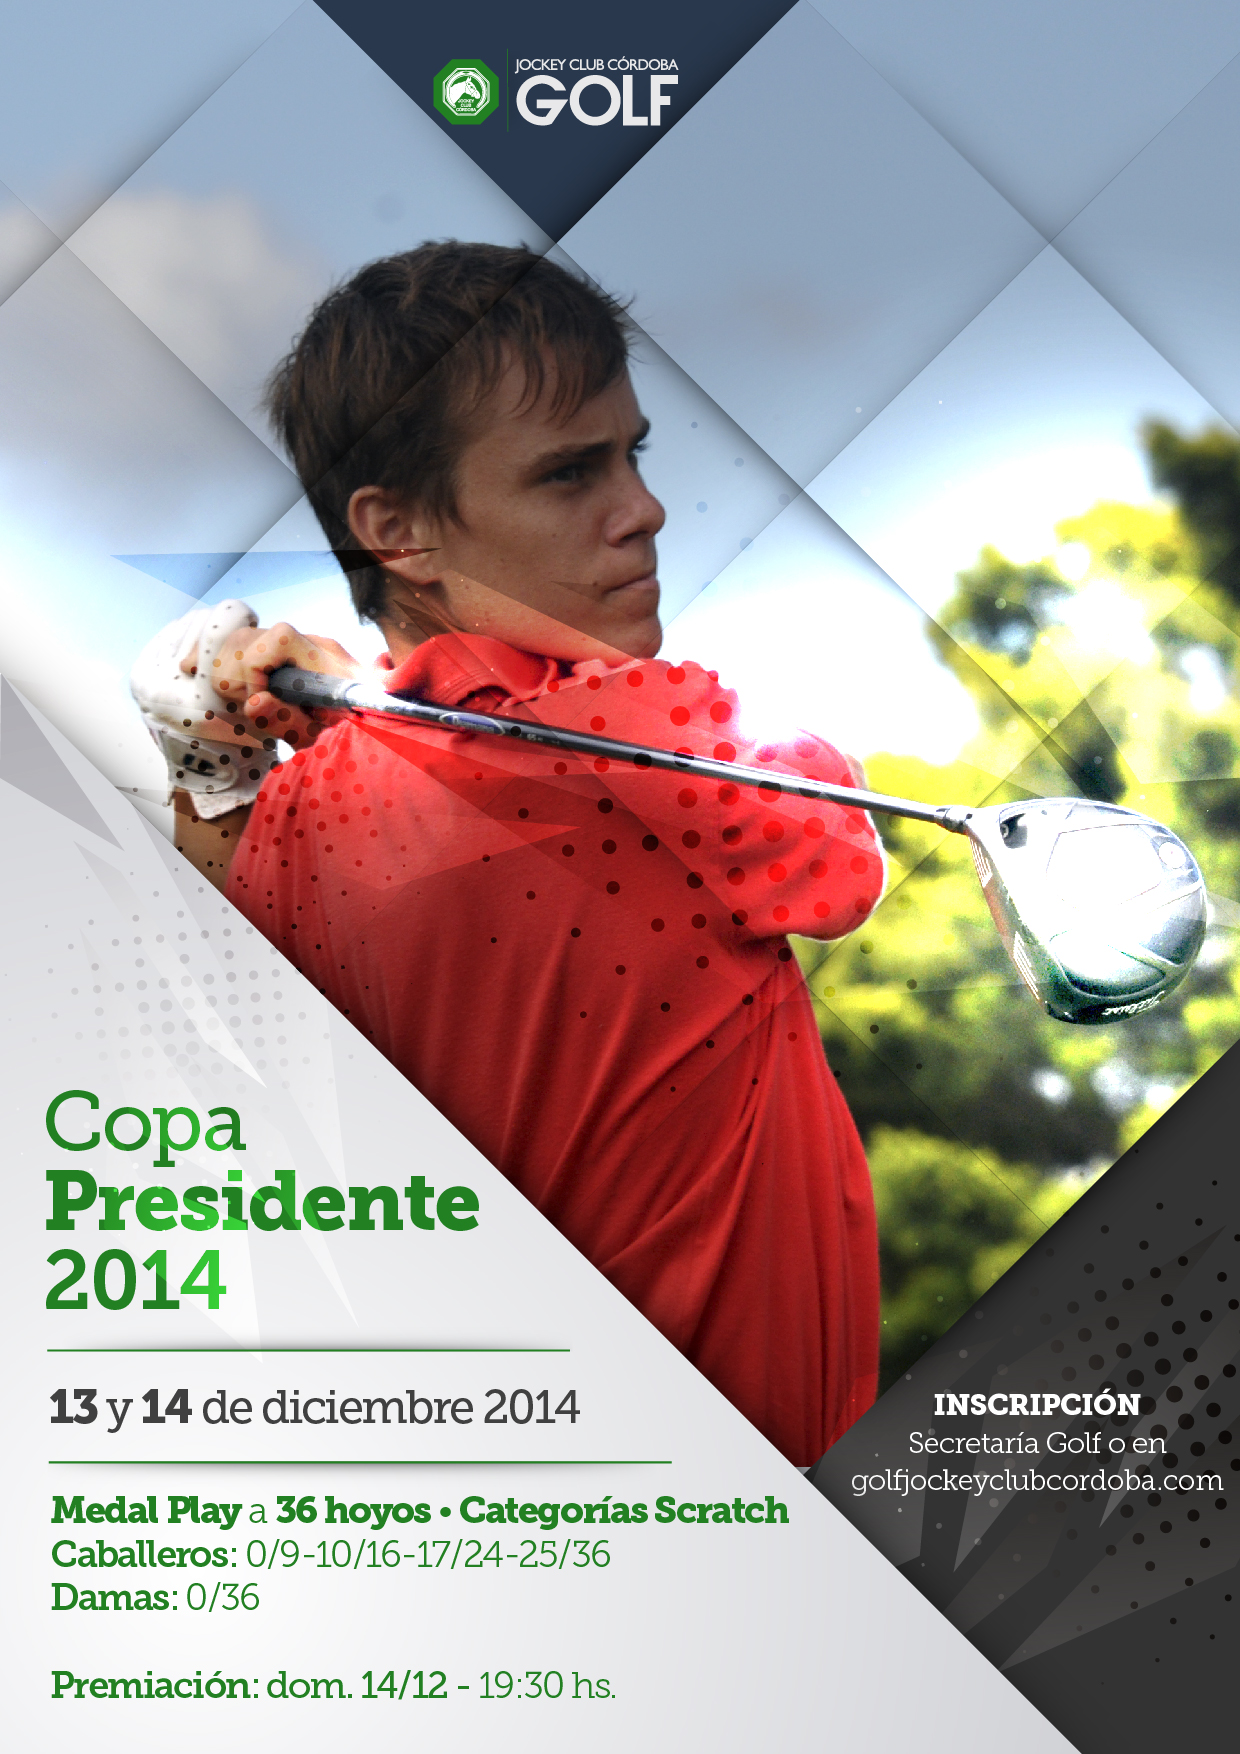 Jockey Club Córdoba Golf - Copa Presidente 2014-01-01